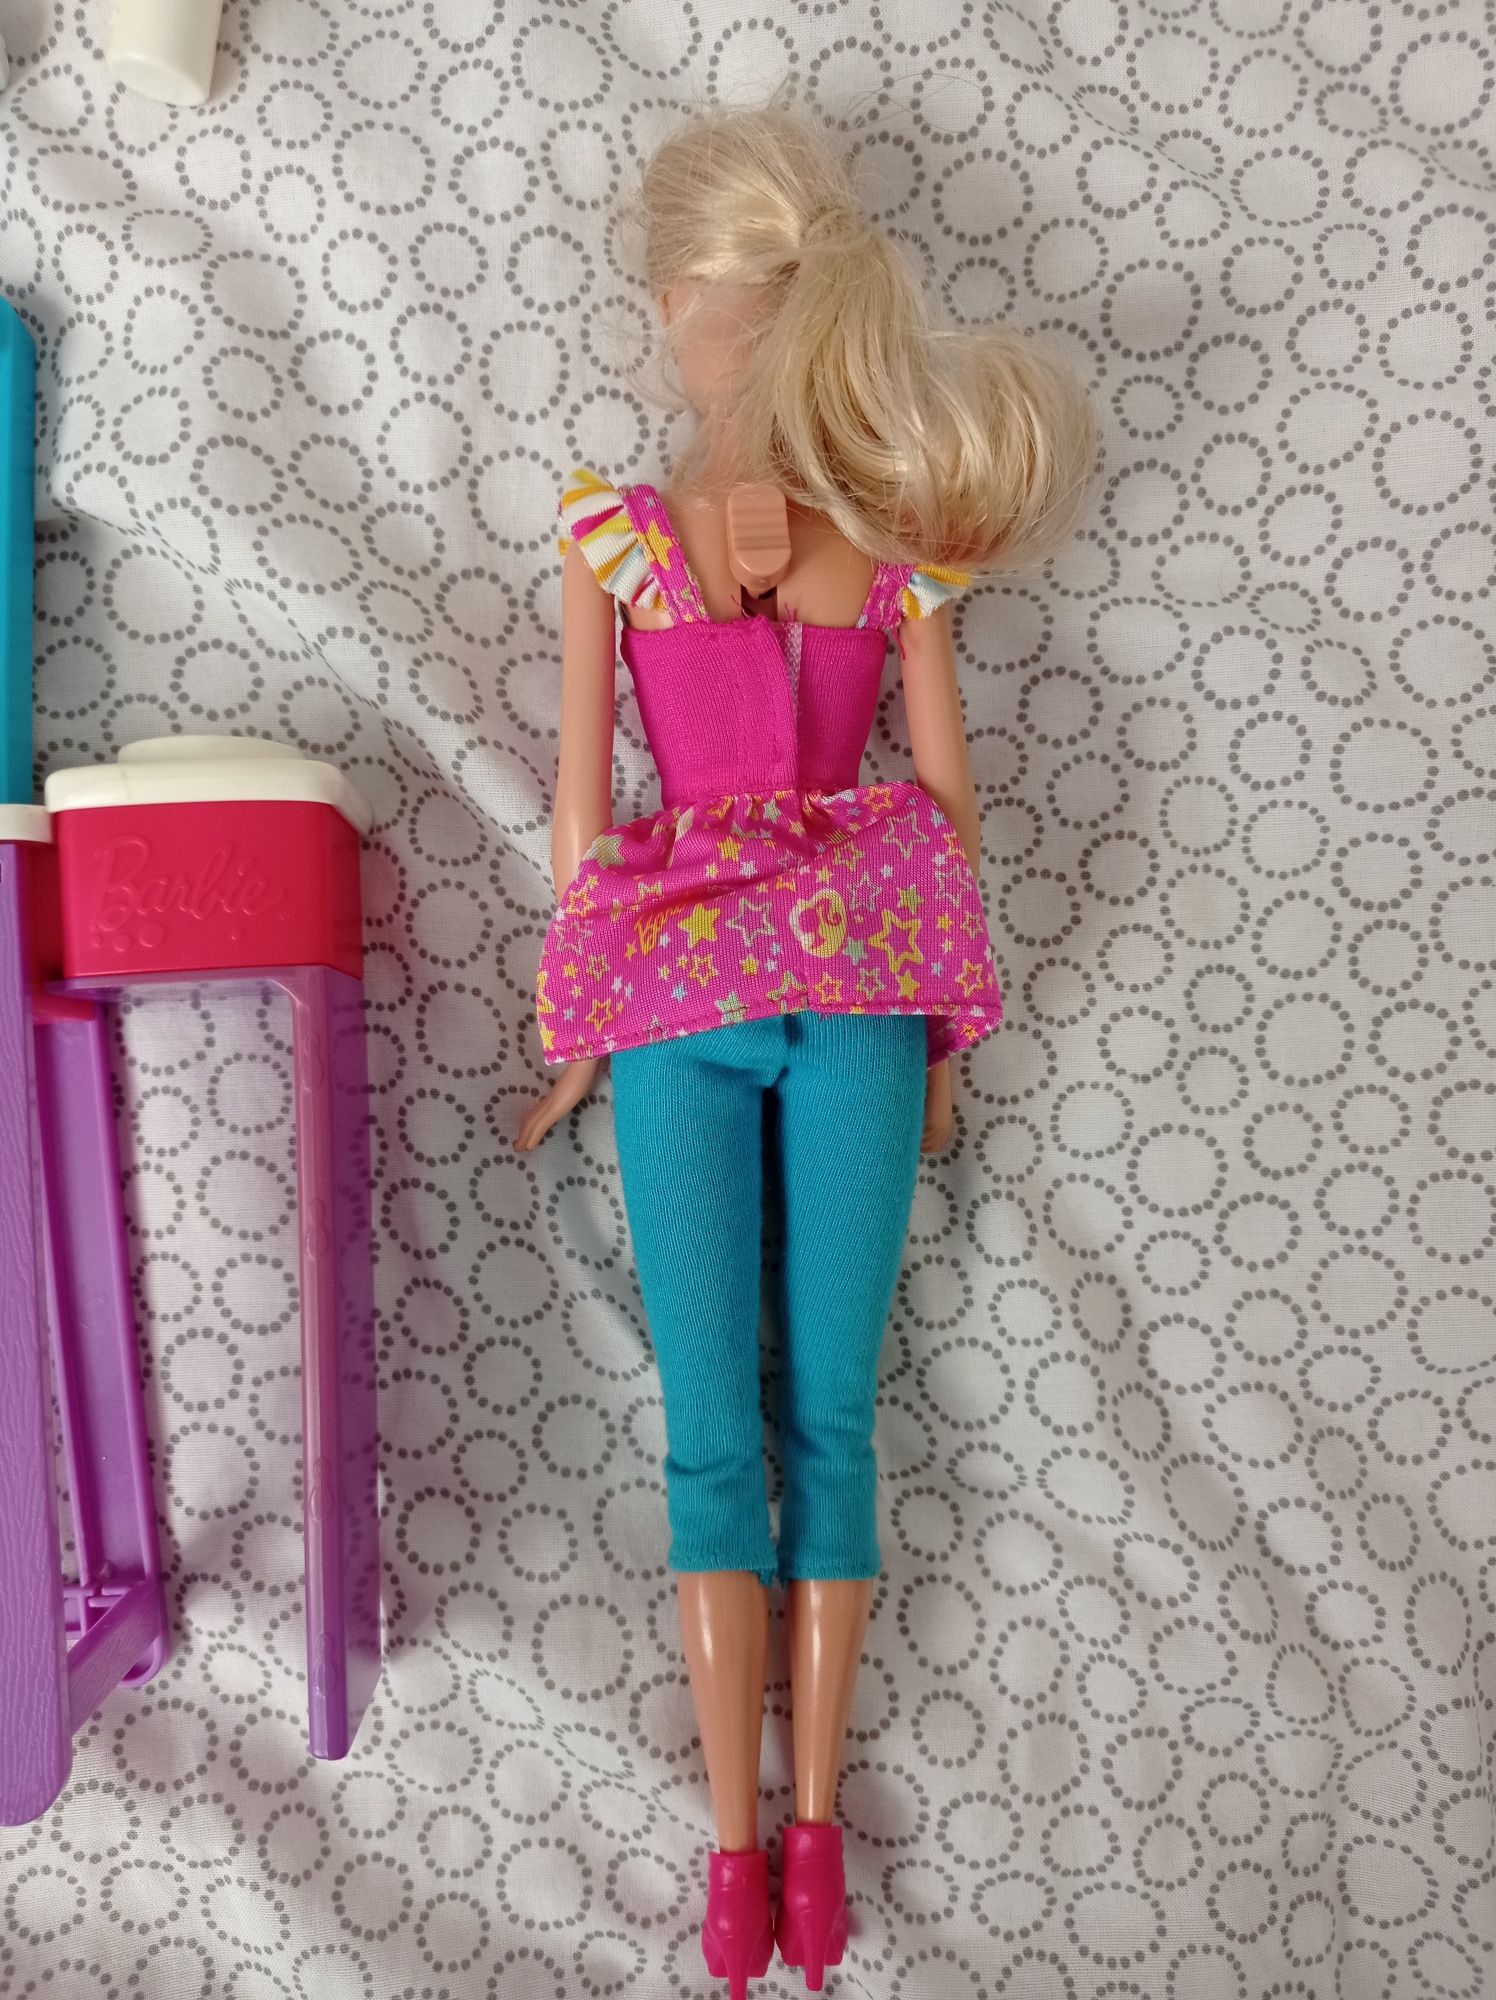 Lalka Barbie + zestaw